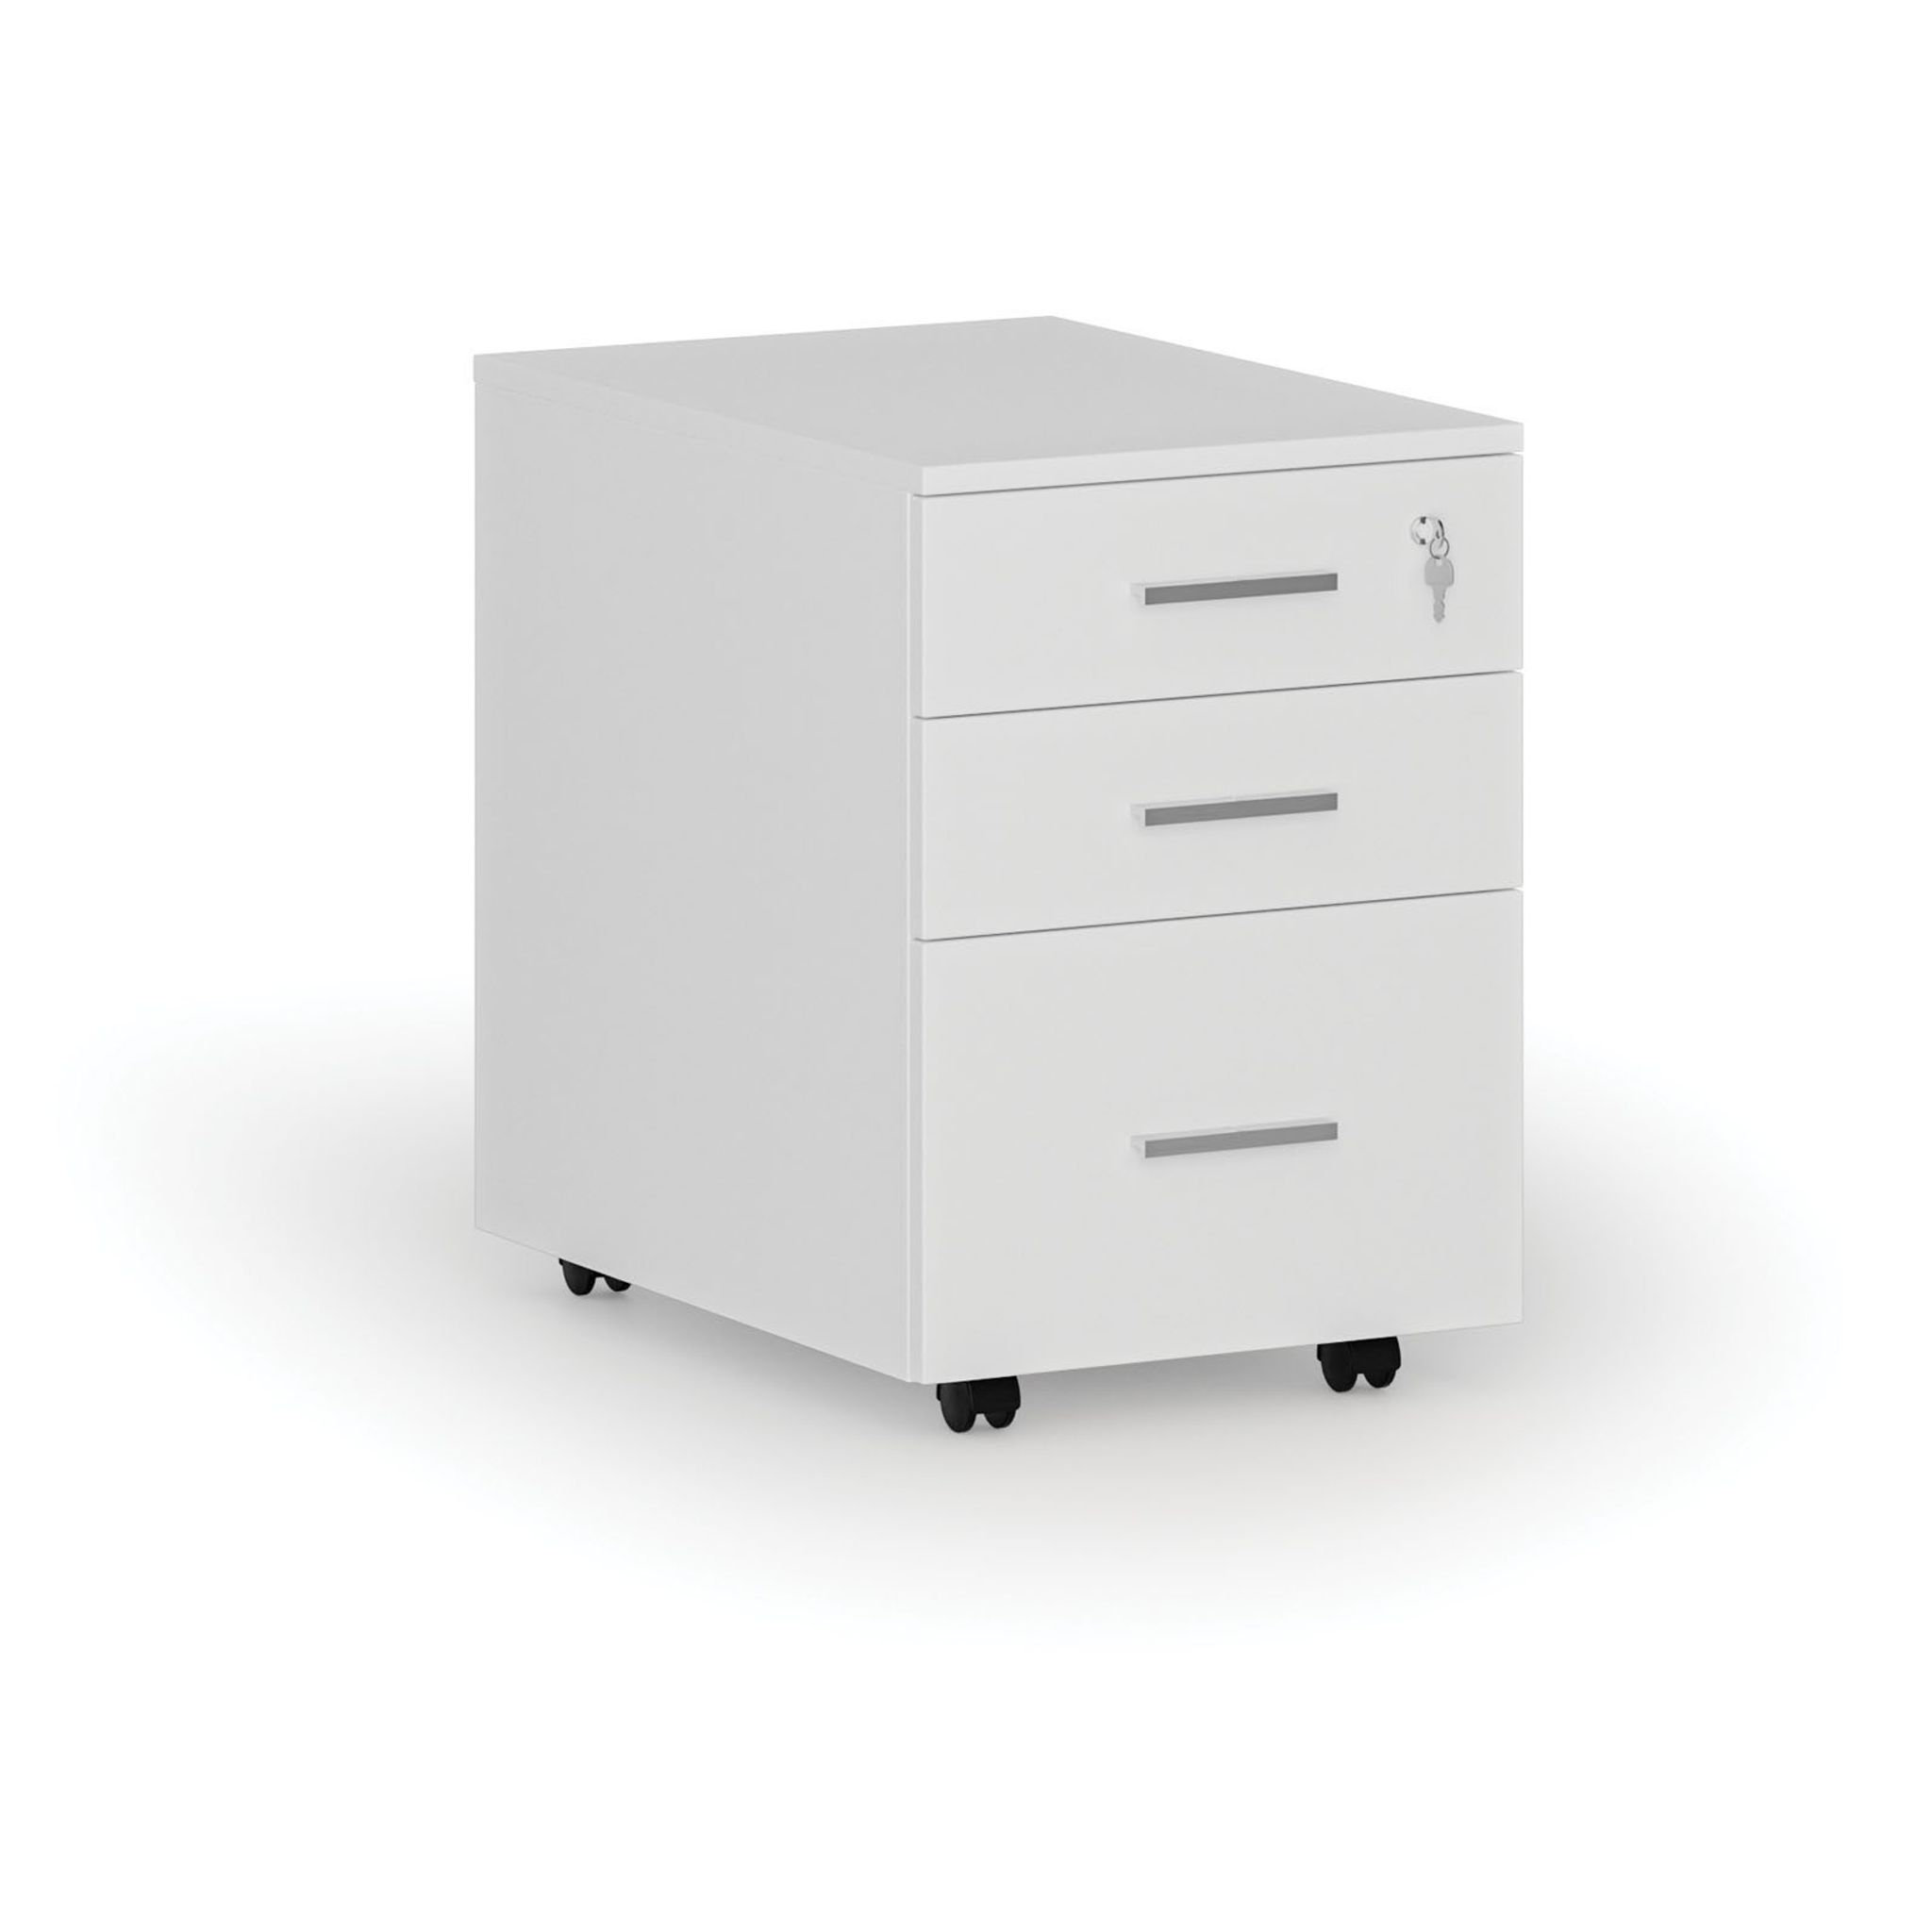 Büro-Rollcontainer für Hängeregister SEGMENT, 3 Schubladen, 430 x 546 x 619 mm